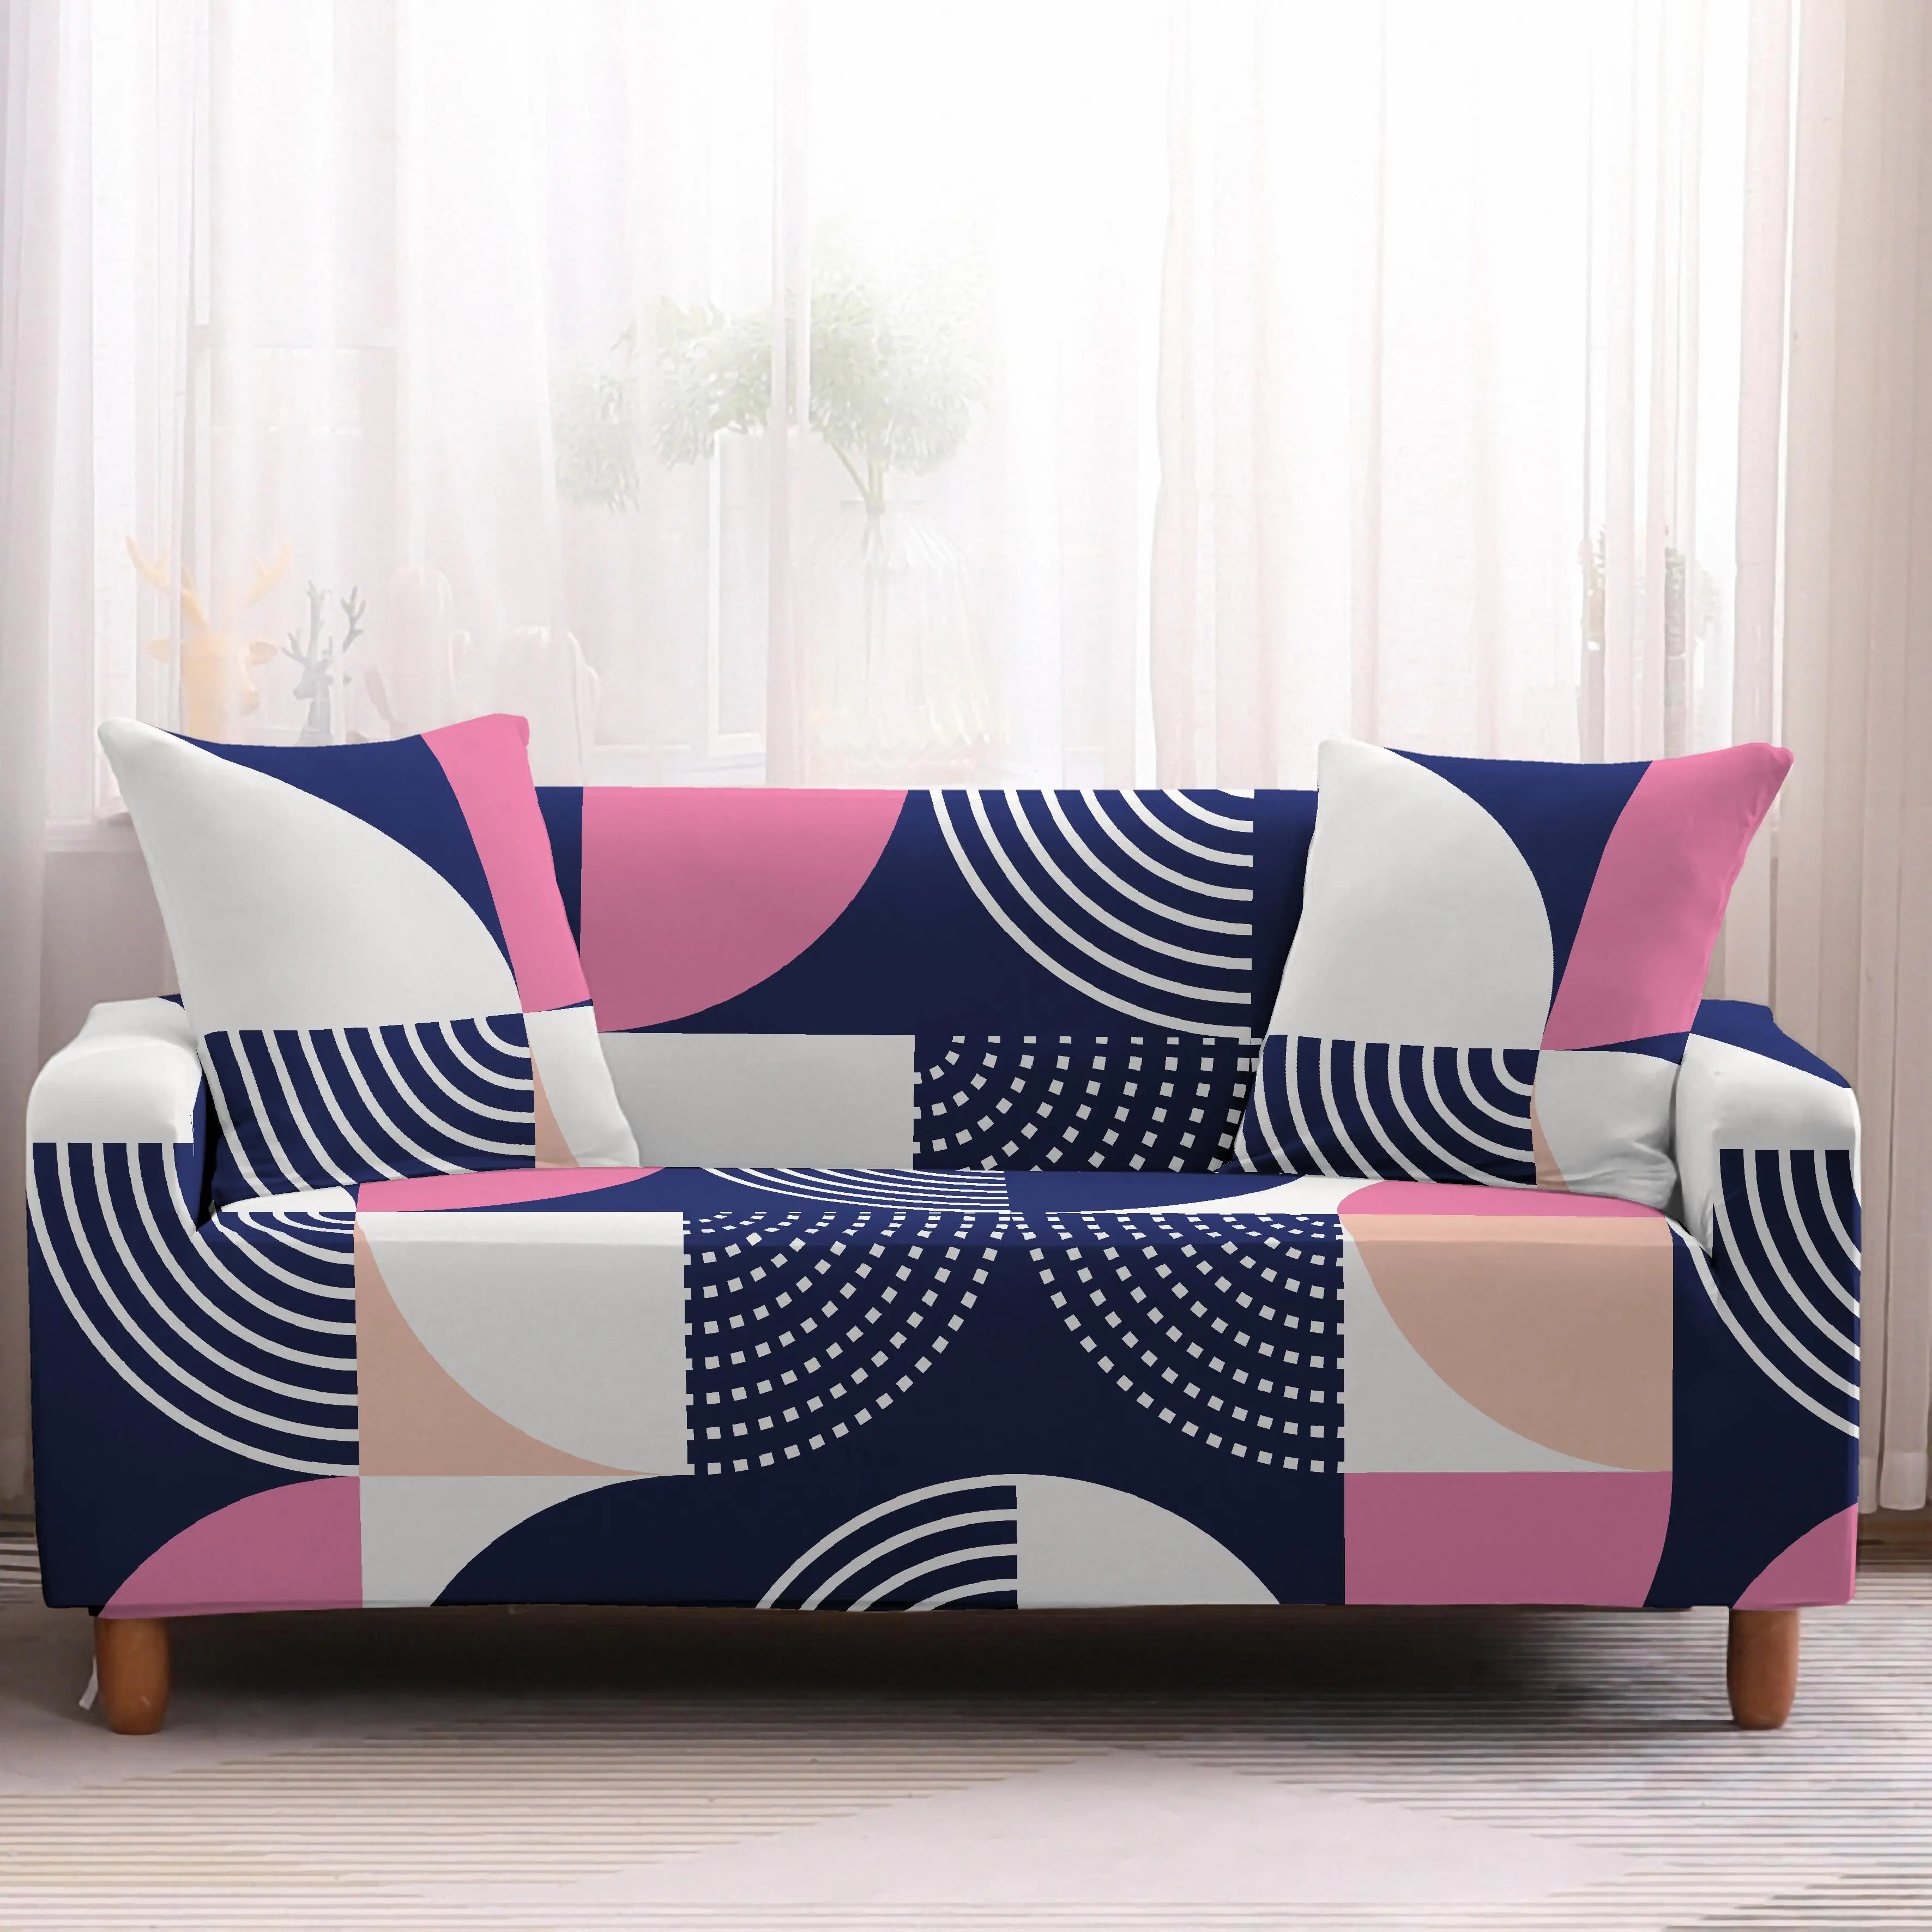 Homesky геометрический чехол для дивана, растягивающийся скандинавский чехол, секционный угловой диван, чехлы для дивана, для гостиной - Цвет: AB005-3